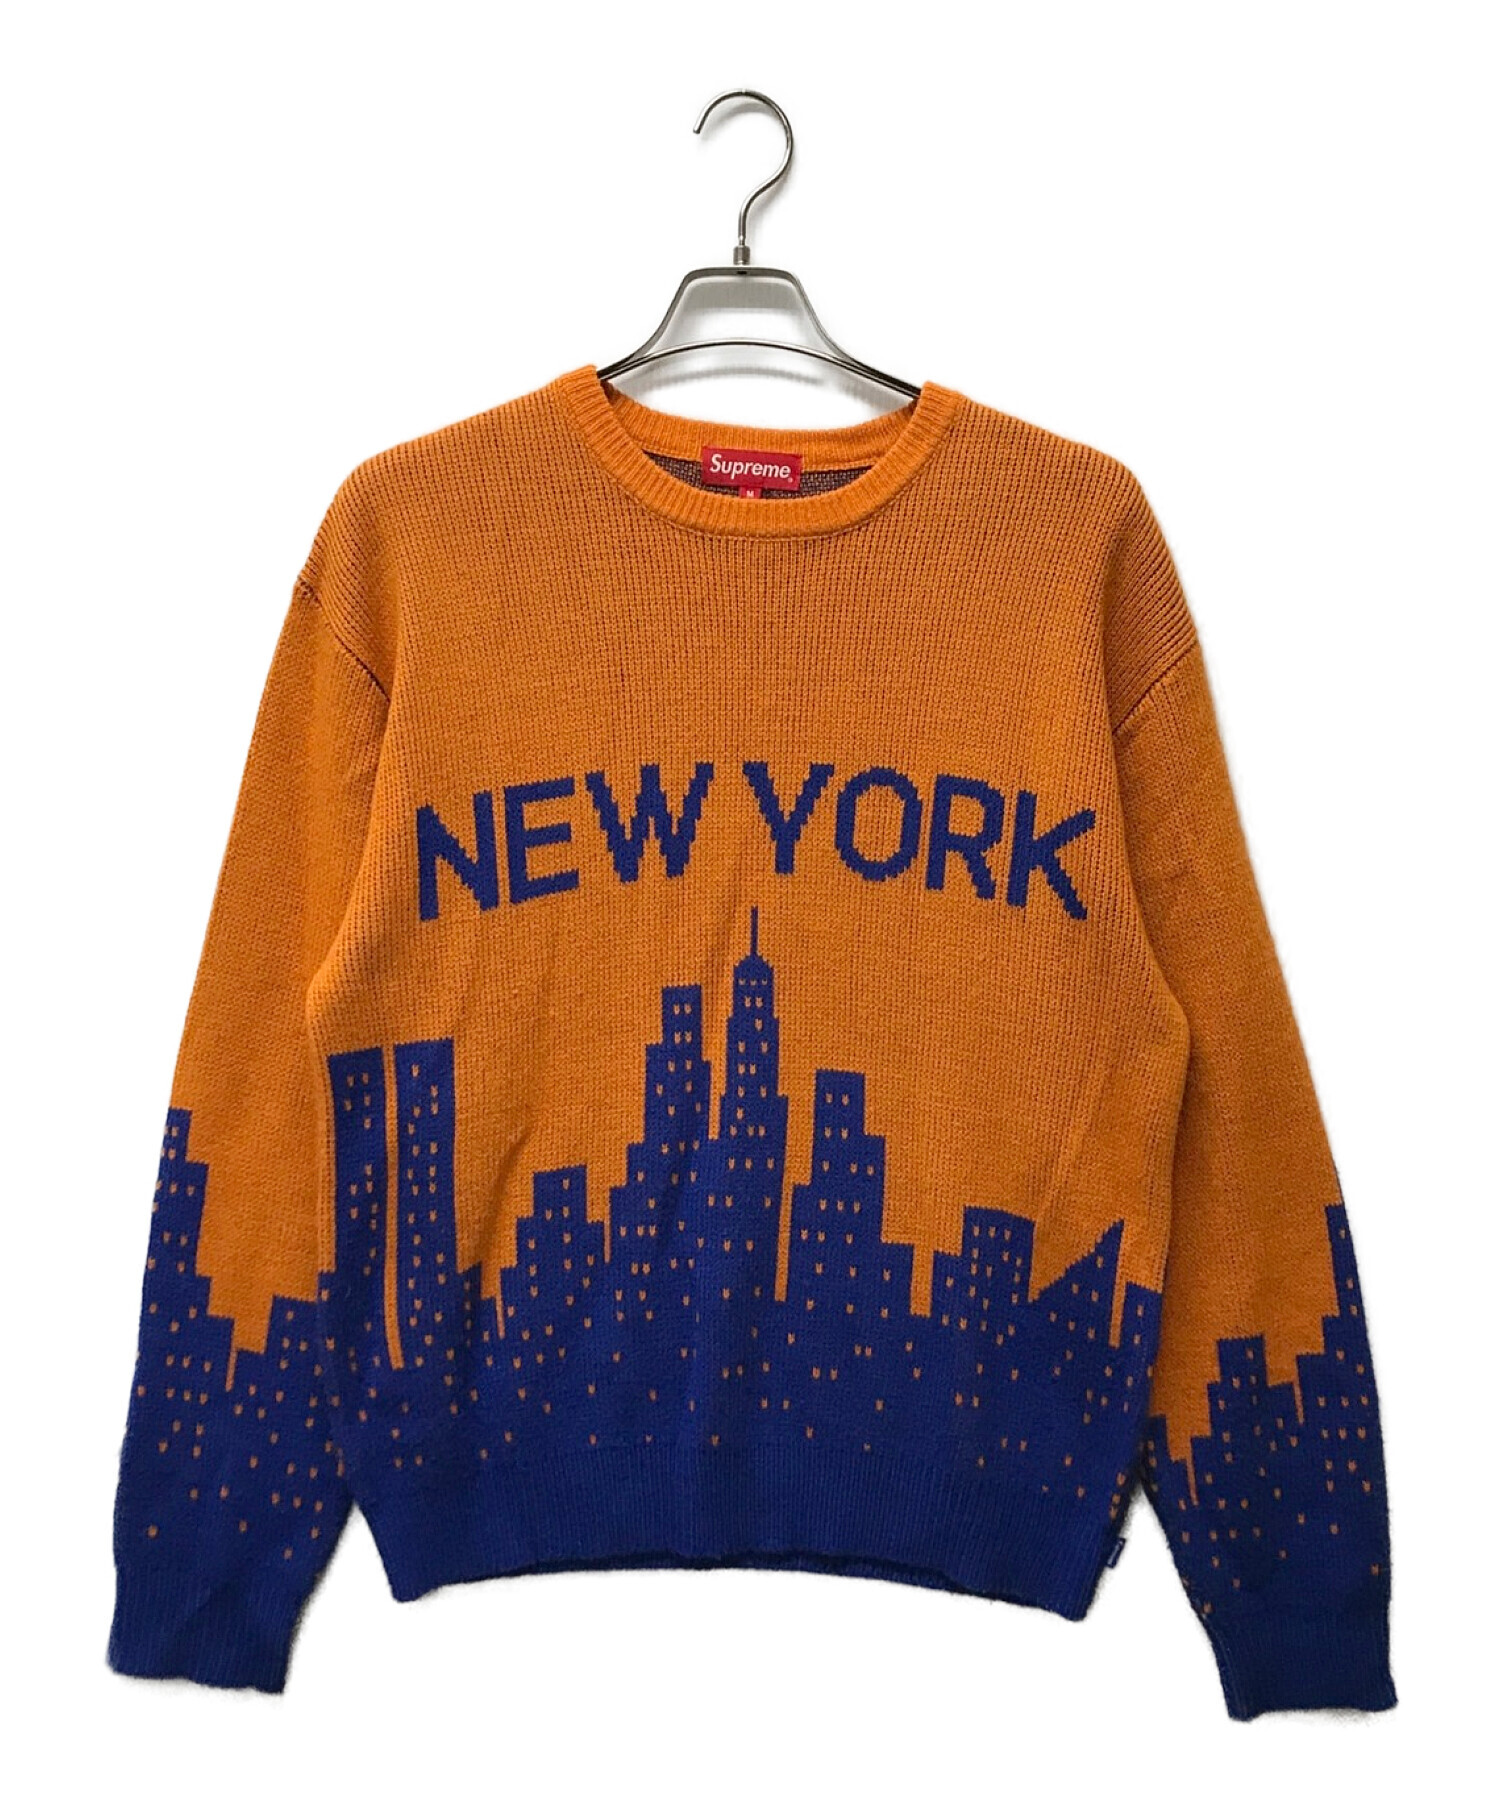 Supreme (シュプリーム) newyork sweater オレンジ サイズ:M